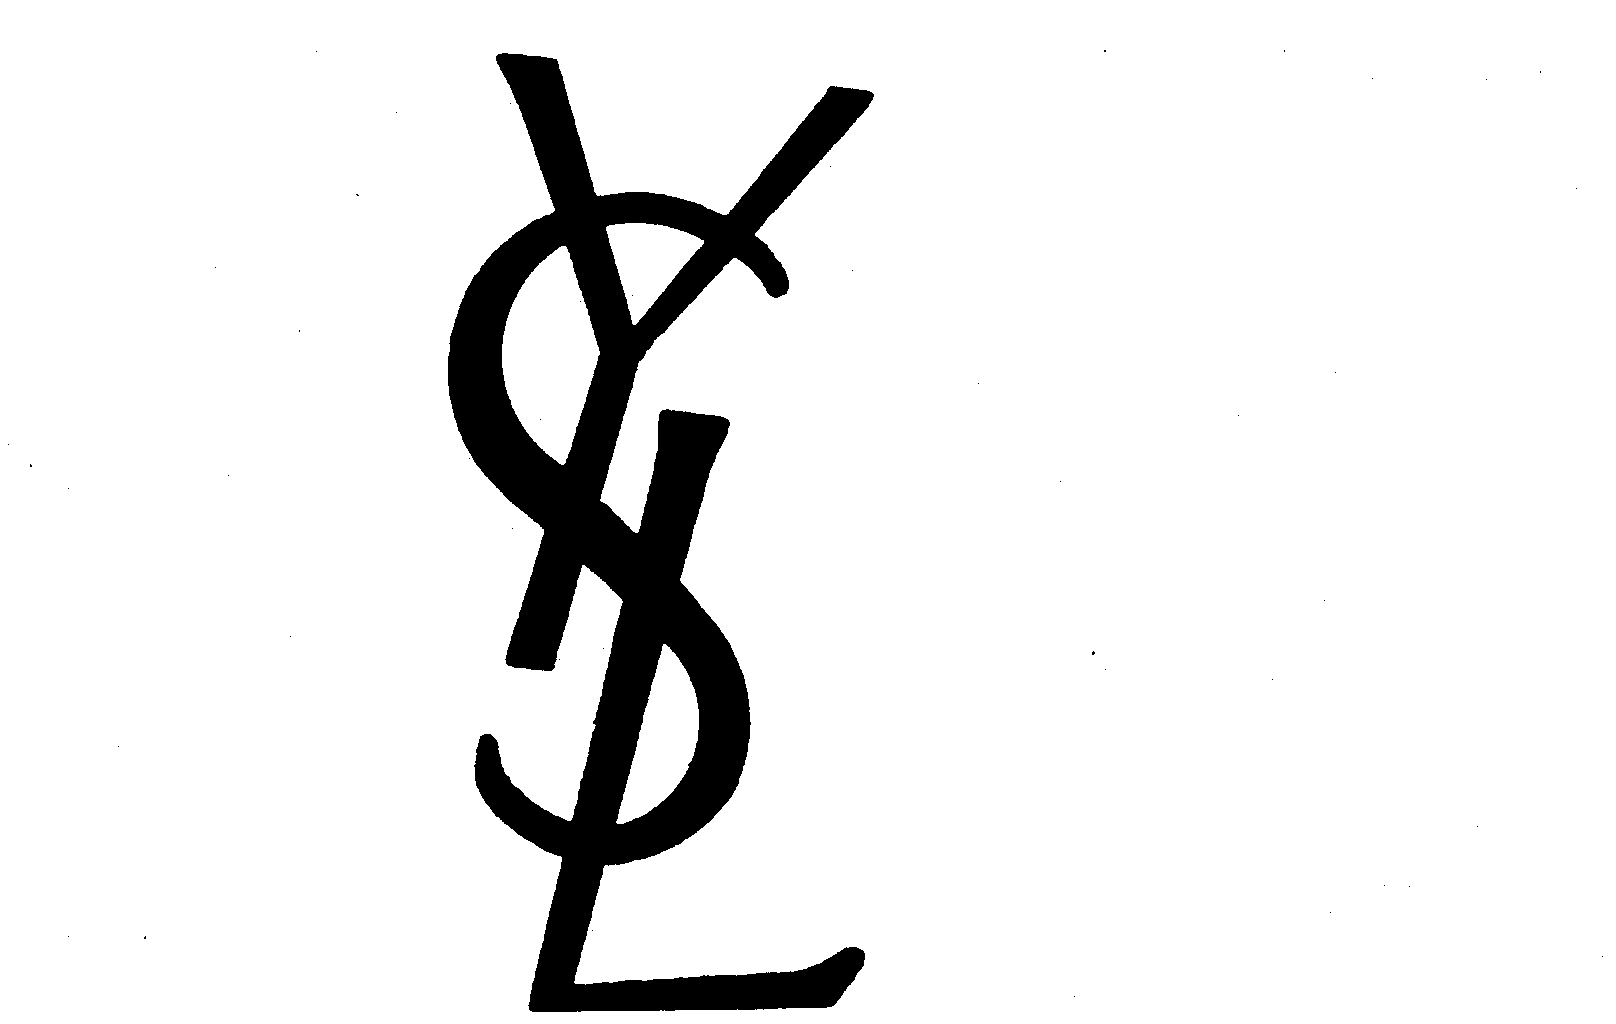 YSL - Yves Saint Laurent Trademark Registration